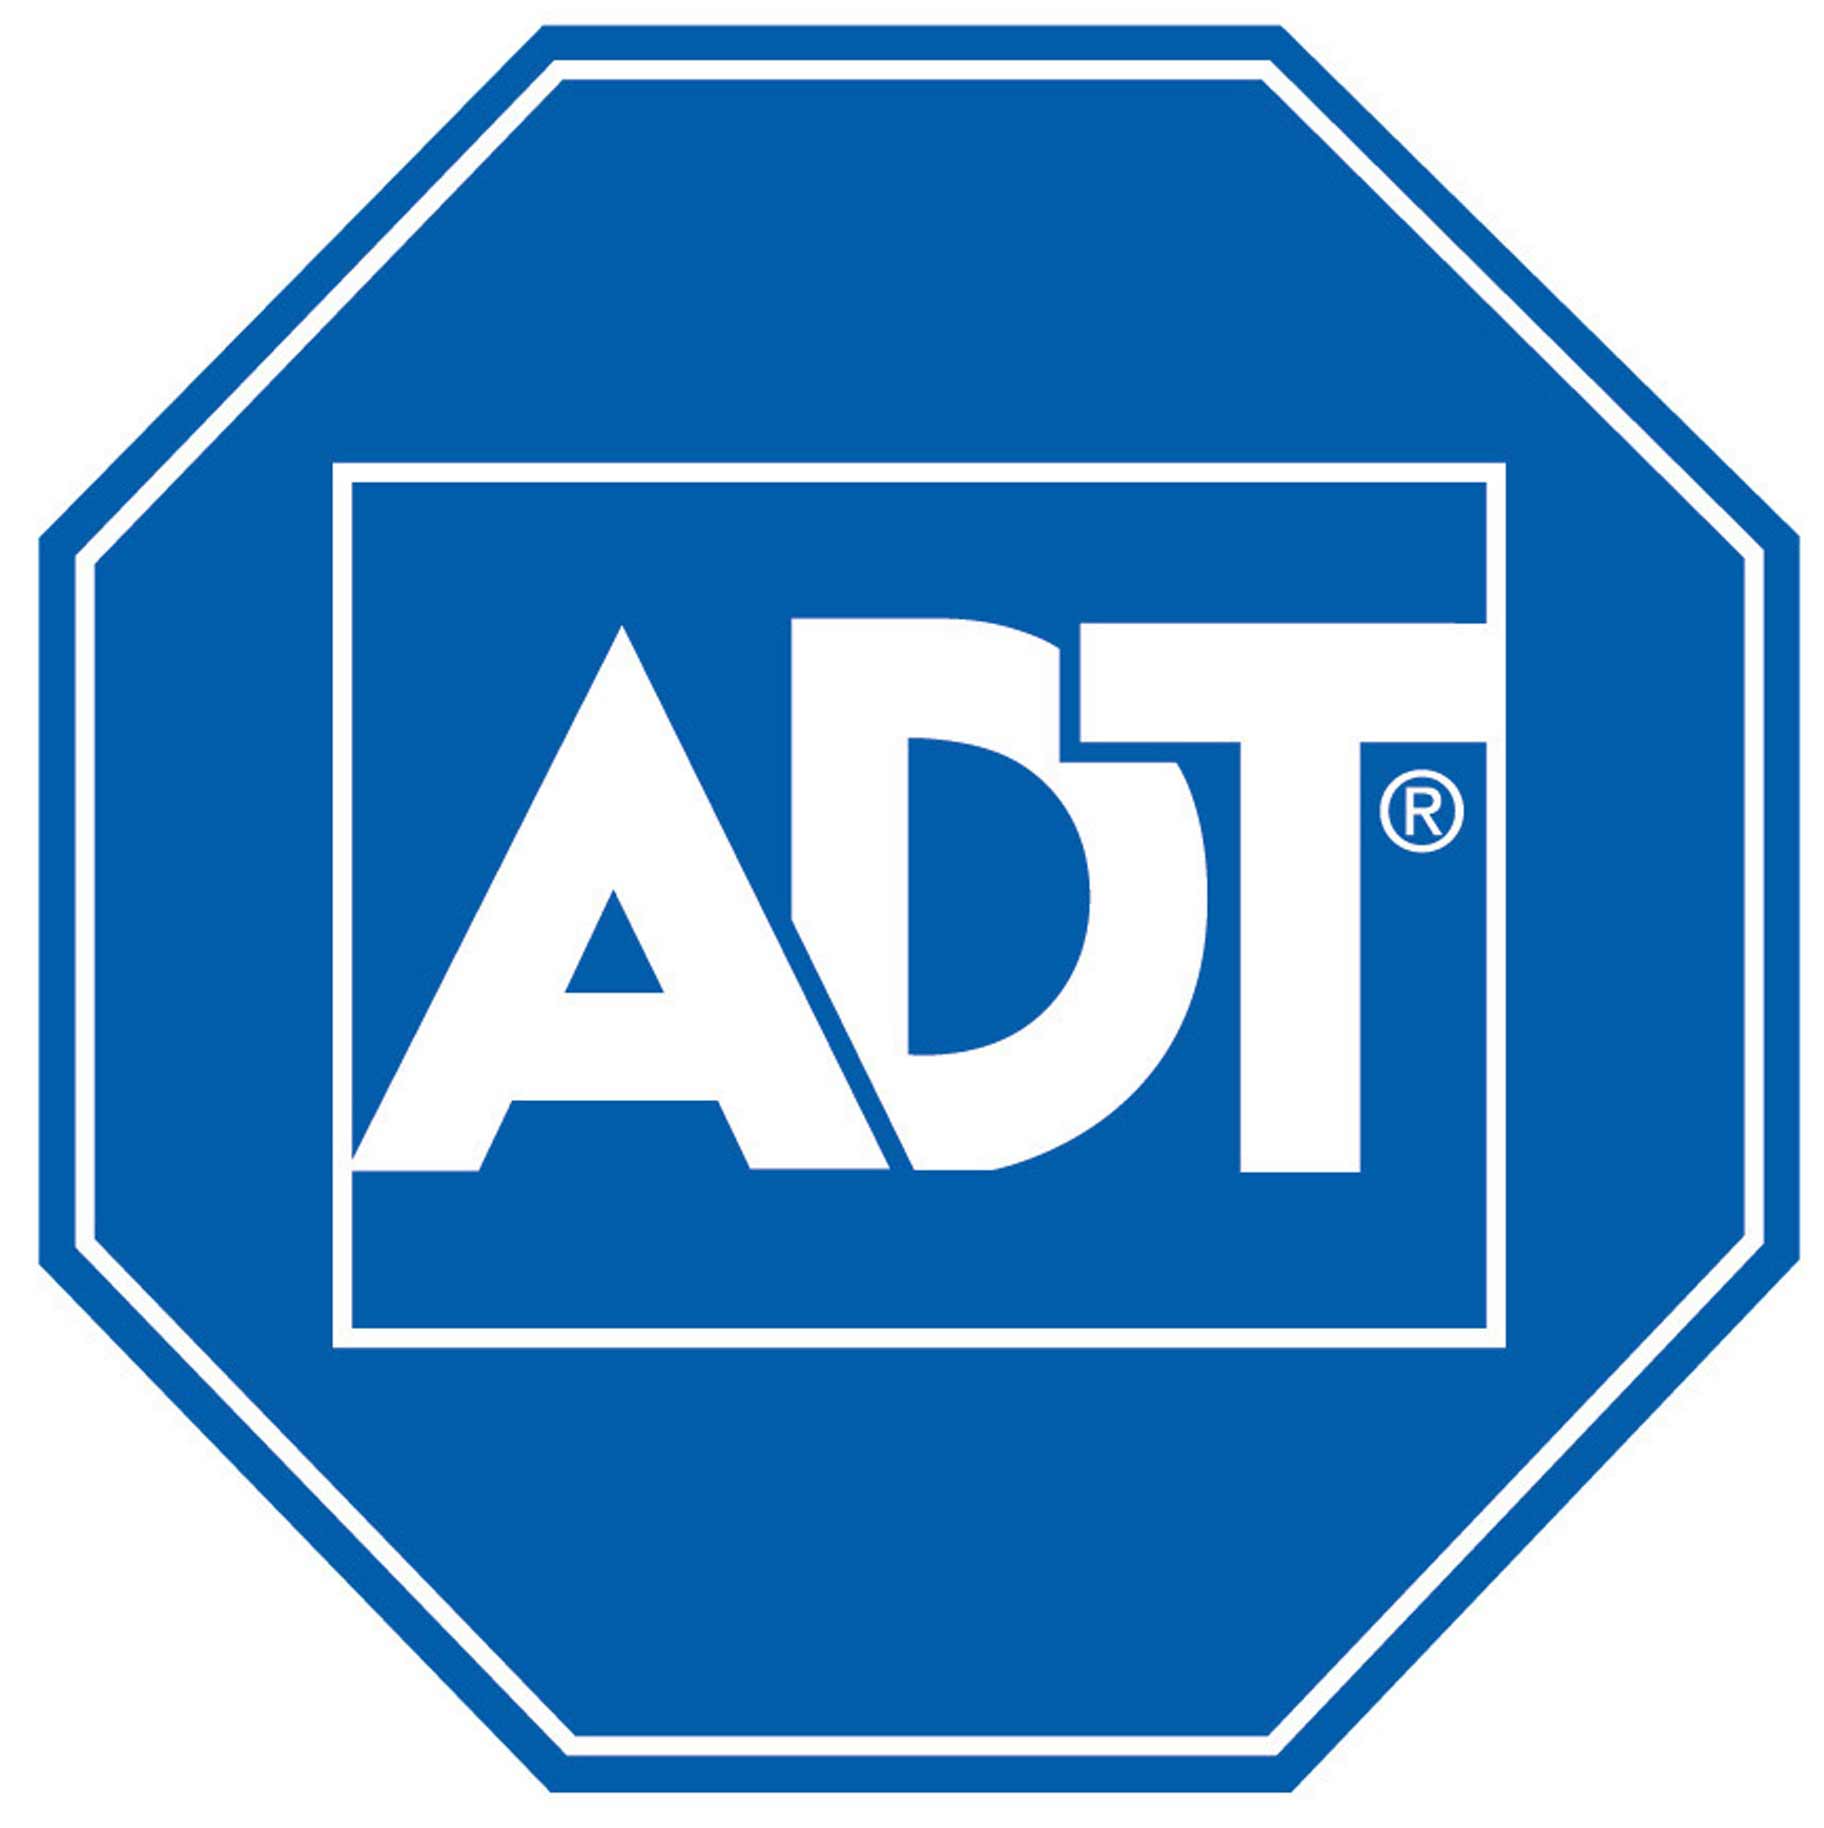 adt_logo.jpg